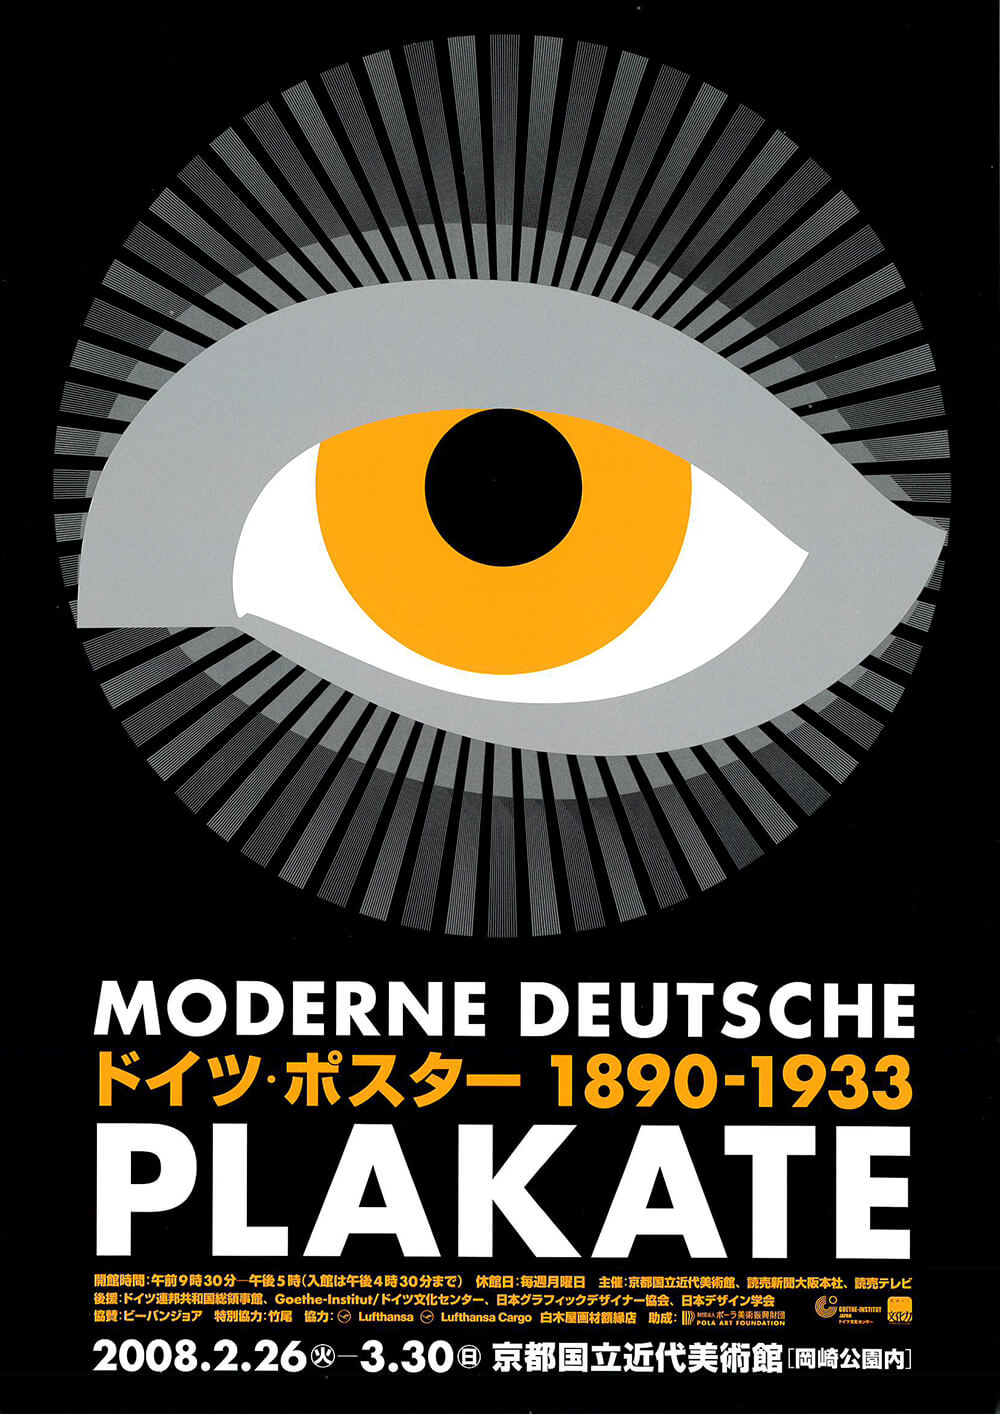 ドイツ ポスター10 1933 Plakate Fajp フライヤー チラシのグラフィックデザイン参考サイト